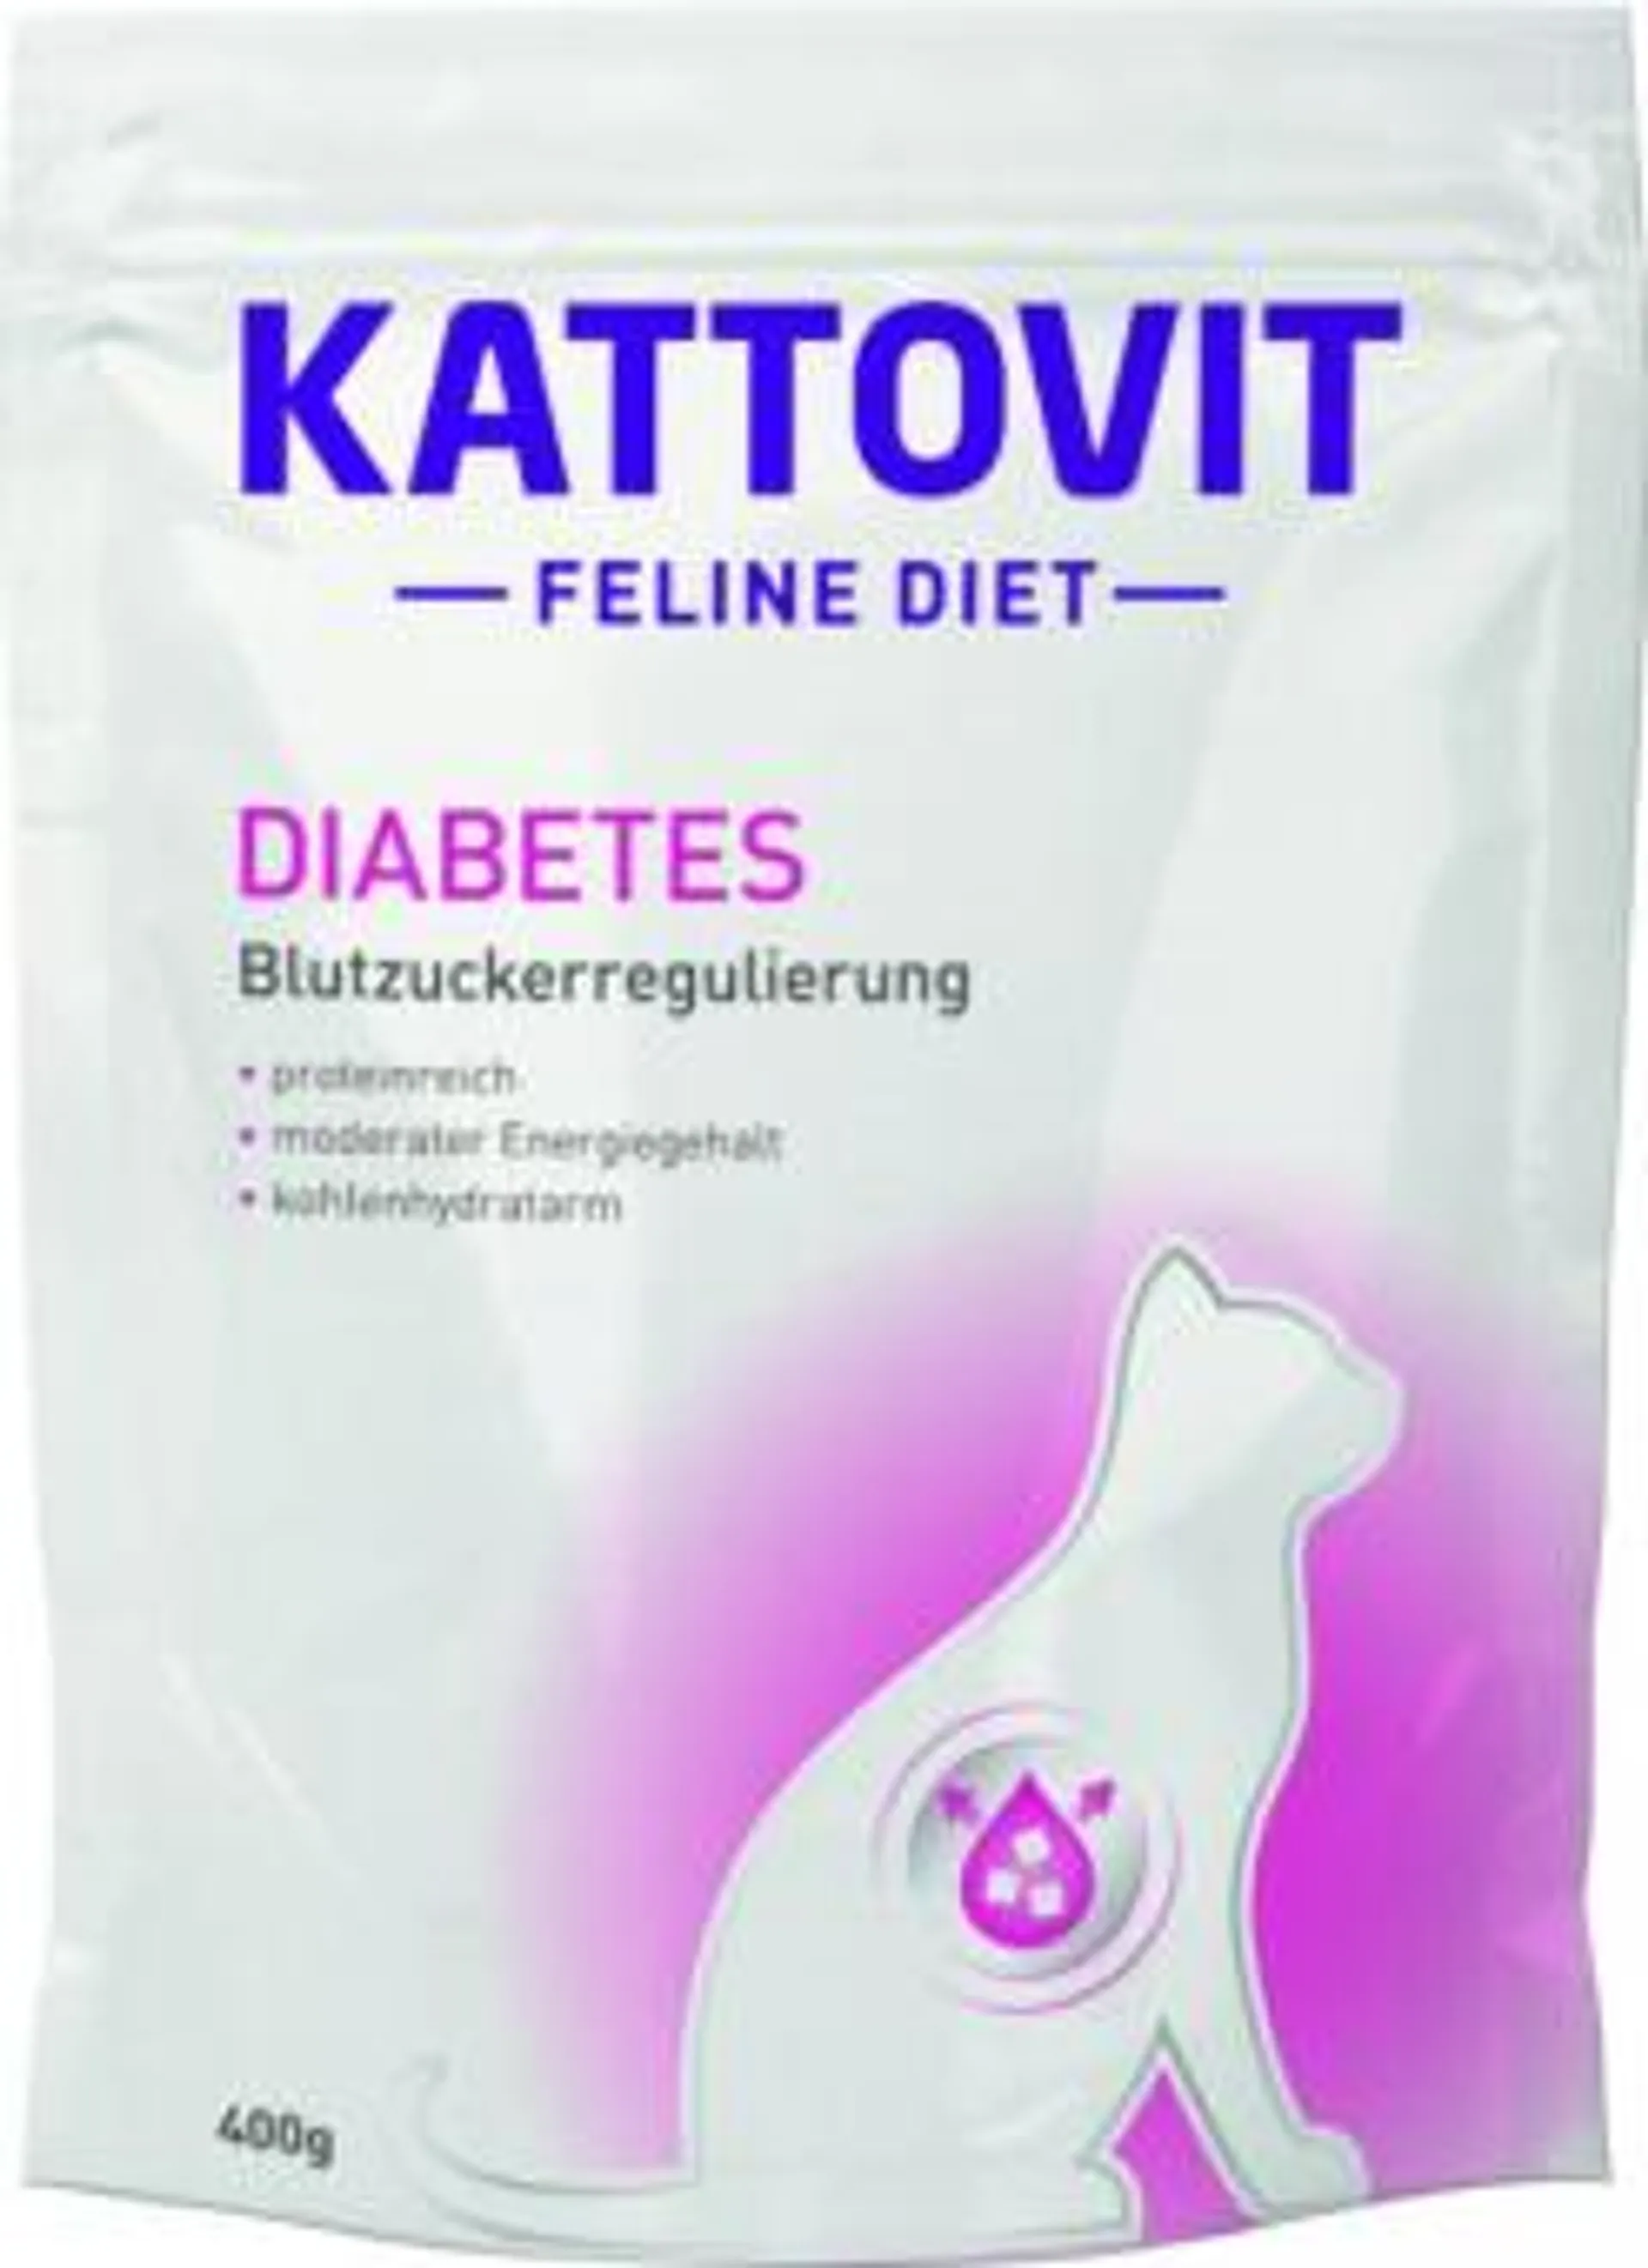 KATTOVIT Feline Diet 400g Diabetes/Gewicht